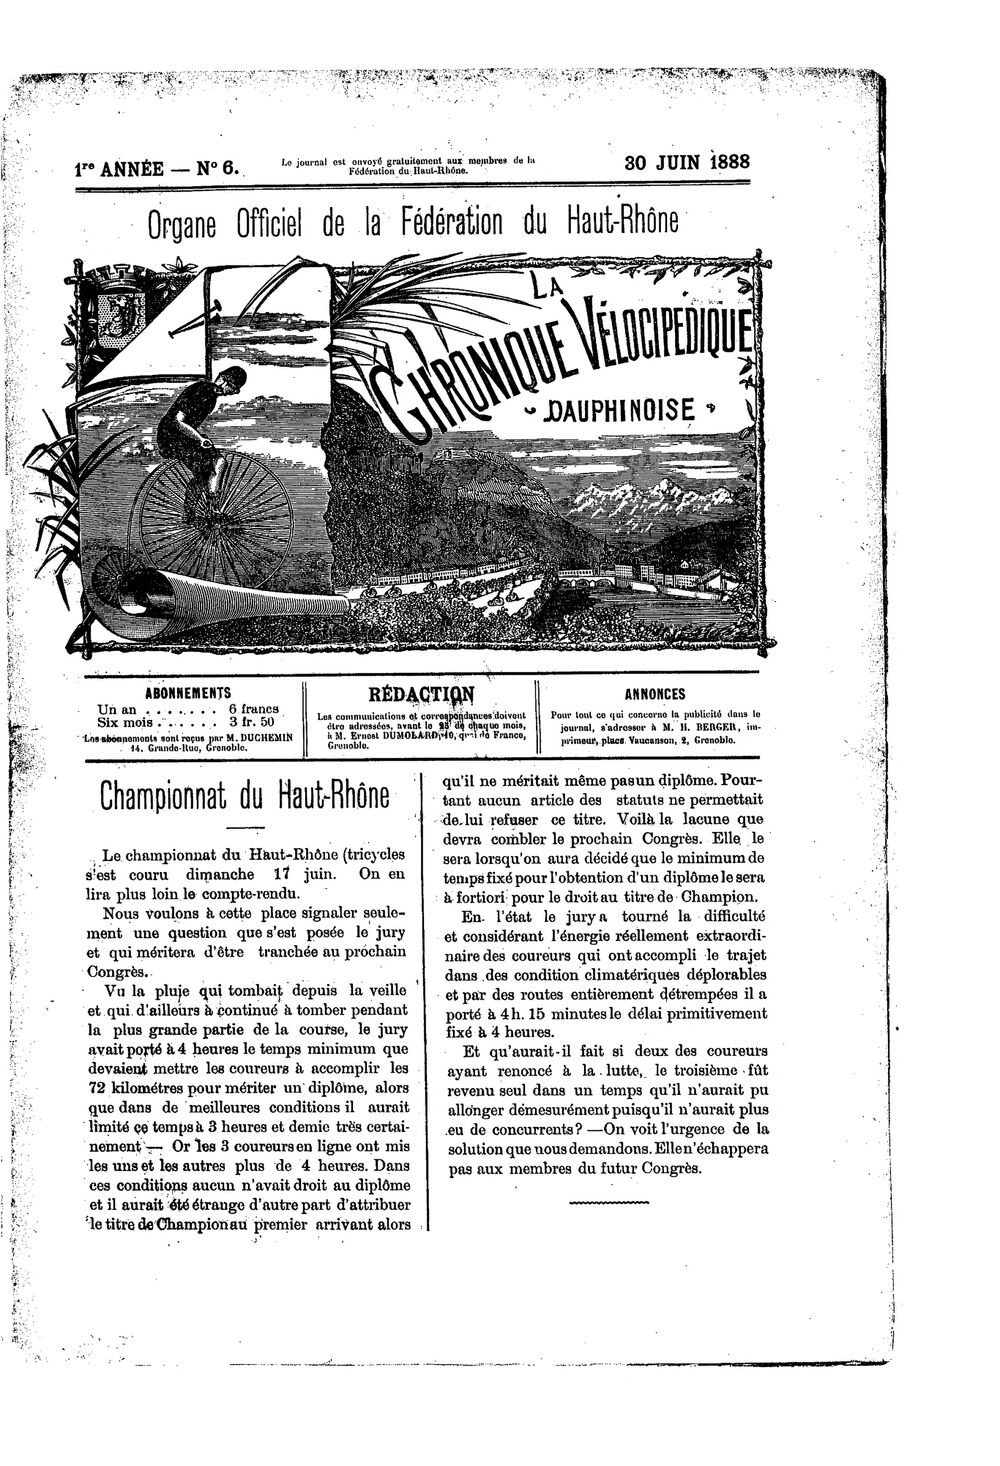 La Chronique vélocipédique dauphinoise / l'imprimeur-gérant b : H. Berger - 30 juin 1888